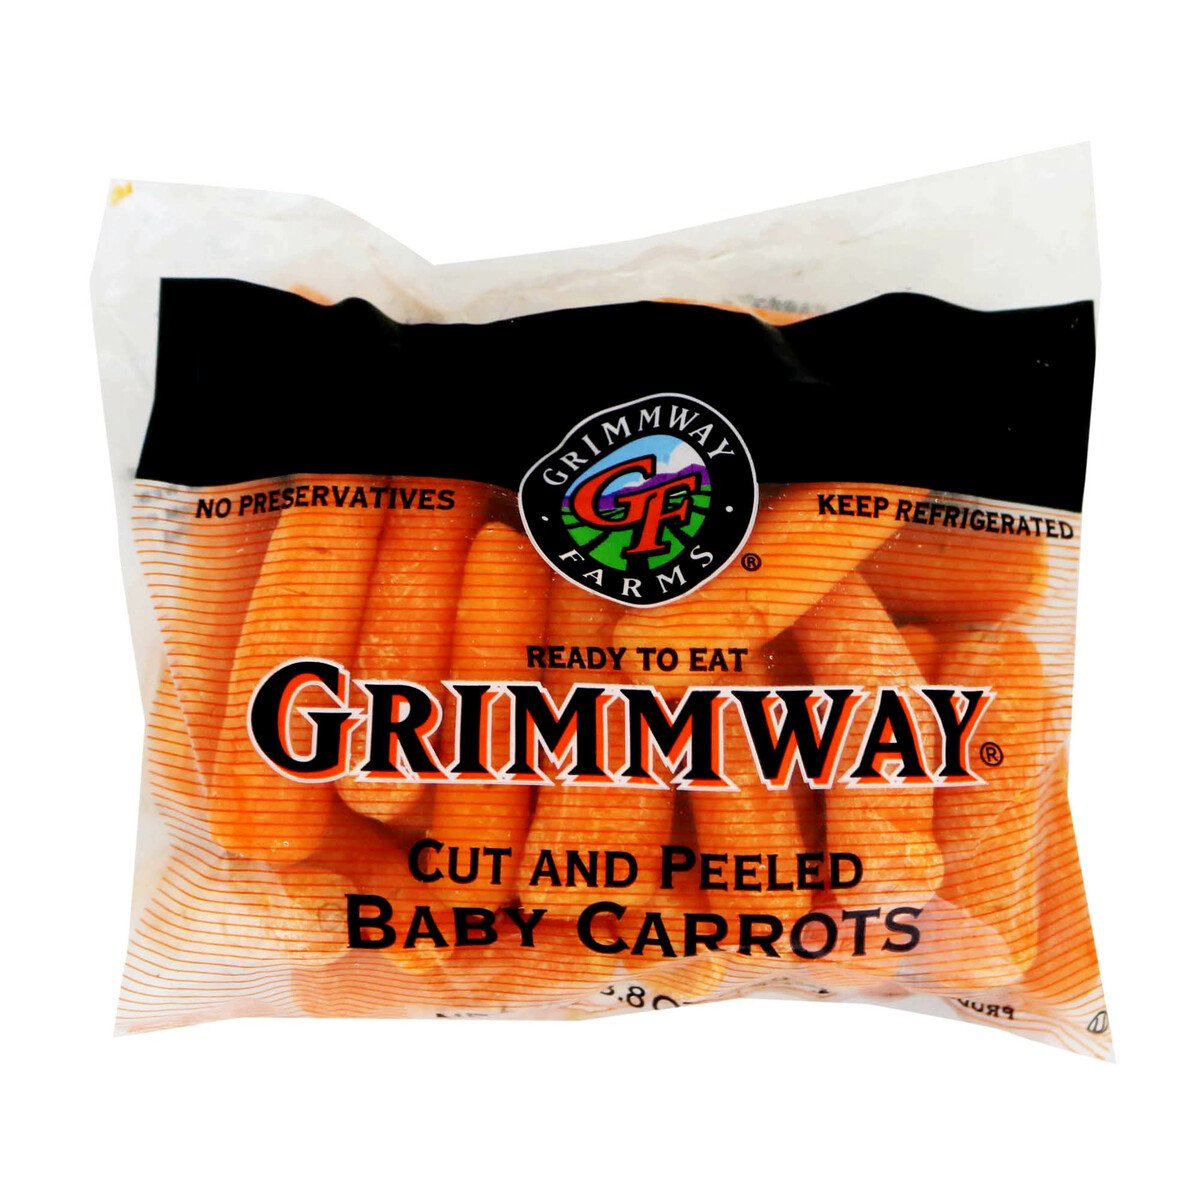 Baby Carrot Nusantara 250g Approx. Weight